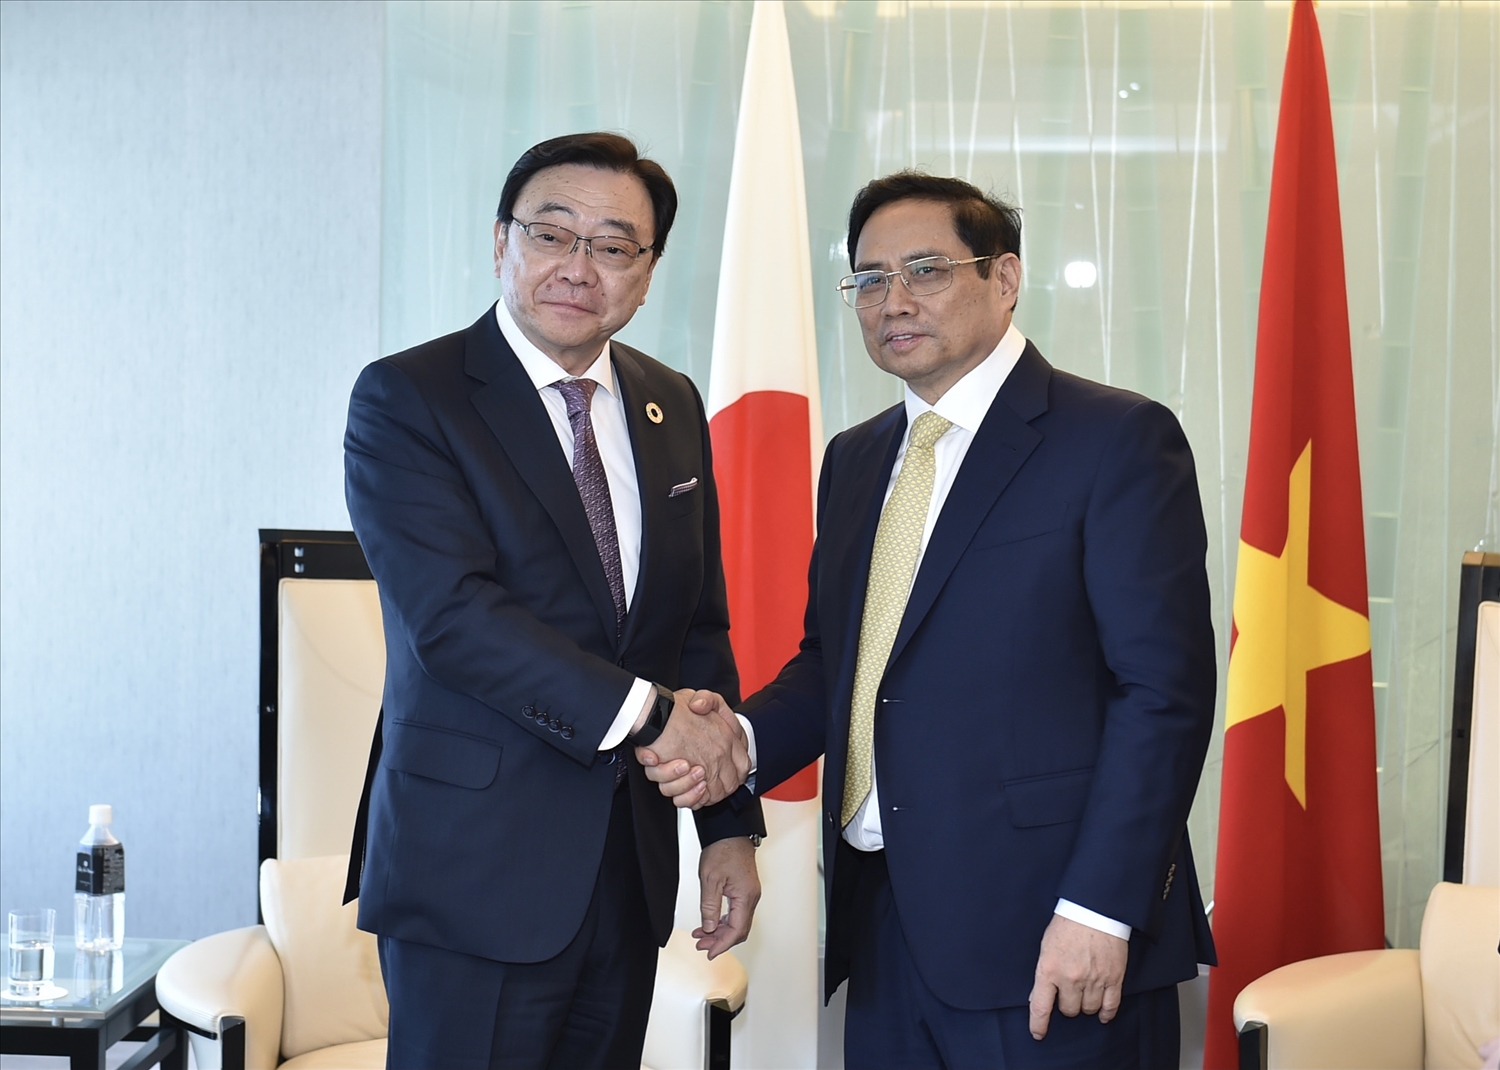 Tại cuộc gặp với Thủ tướng Phạm Minh Chính, Tổng giám đốc Idemitsu khẳng định tập đoàn sẽ có tiếp tục triển khai các dự án đầu tư, hợp tác mới vào Việt Nam thời gian tới. Ảnh: VGP/Nhật Bắc